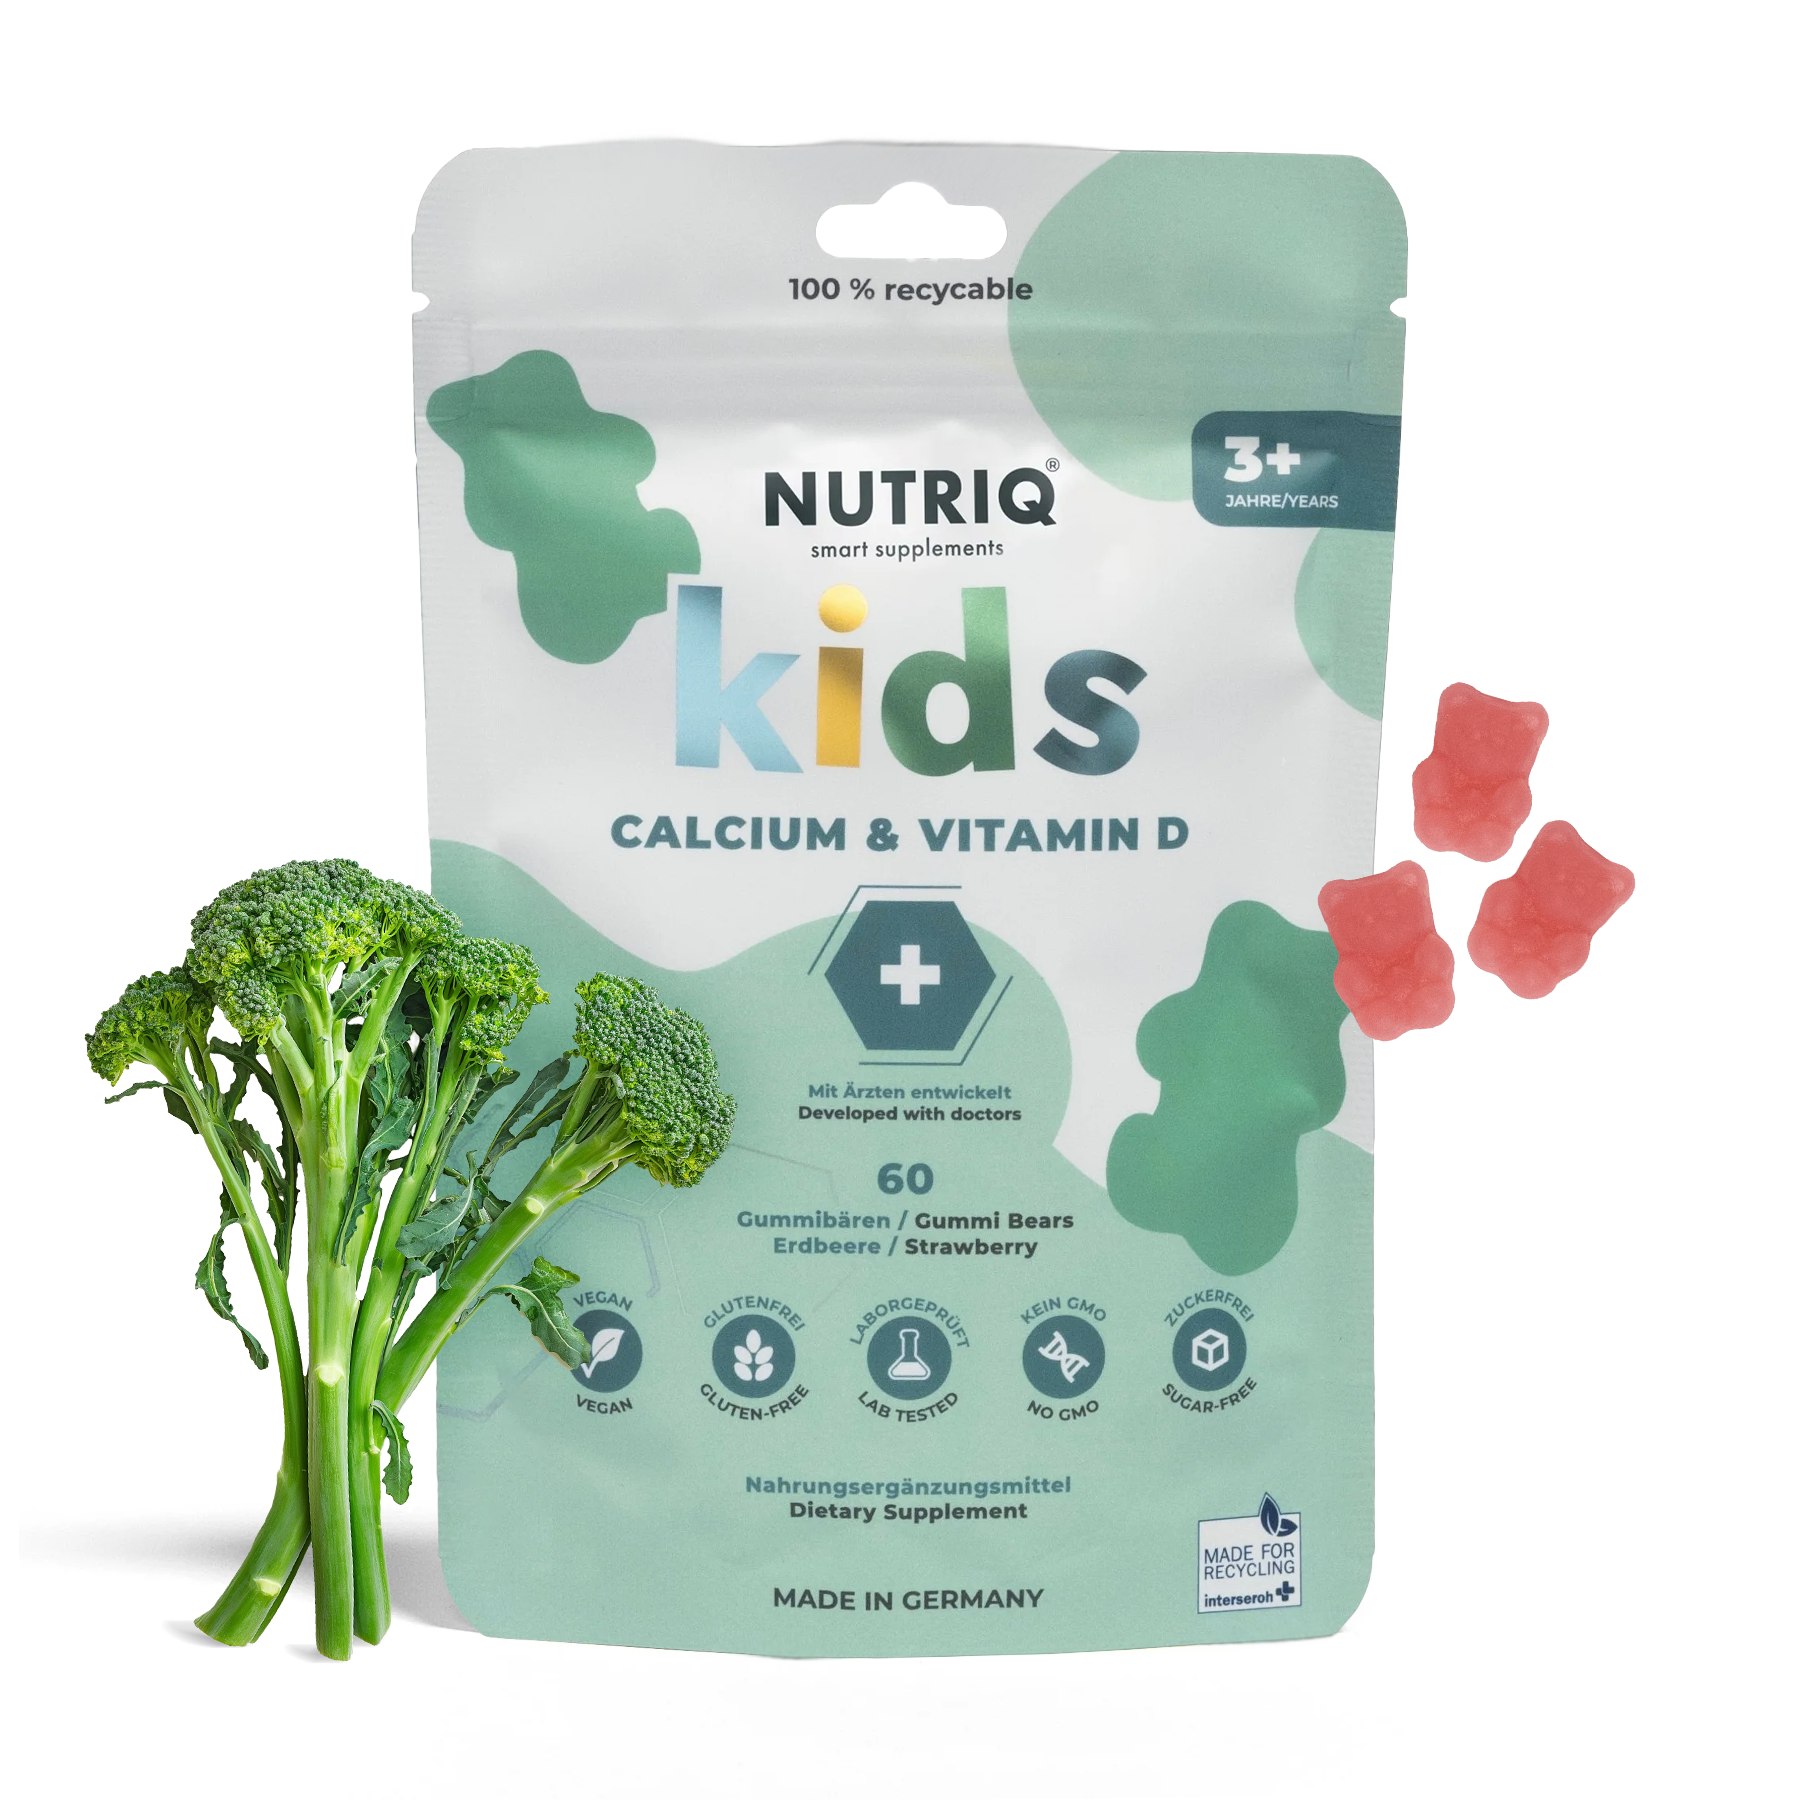 Kids Calcium & Vitamin D